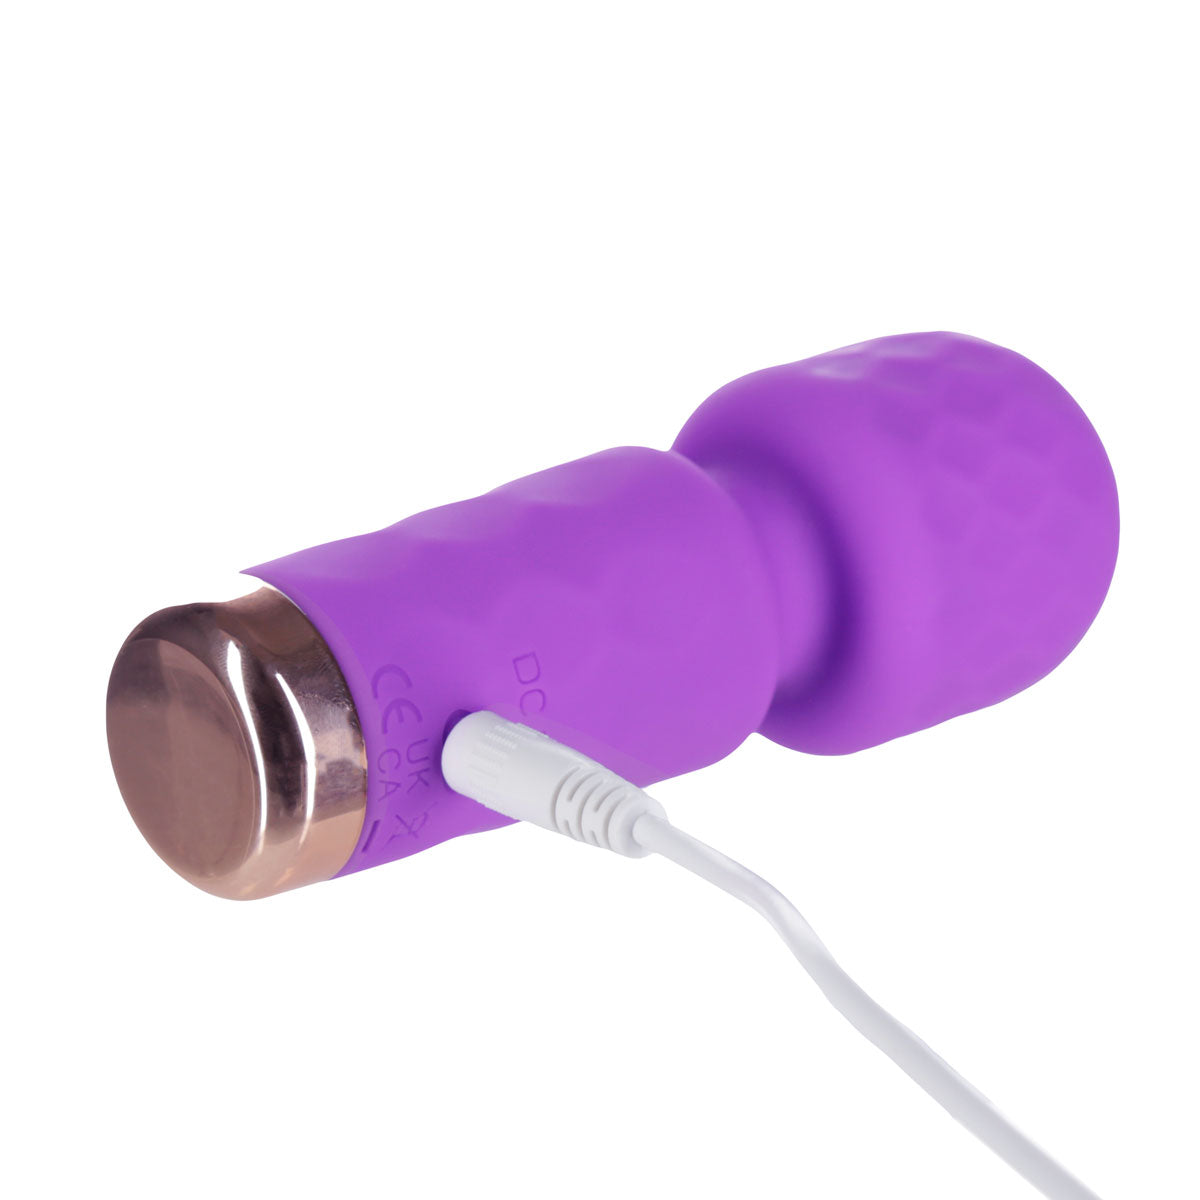 M’Lady – Mini Vibrating Wand – Purple